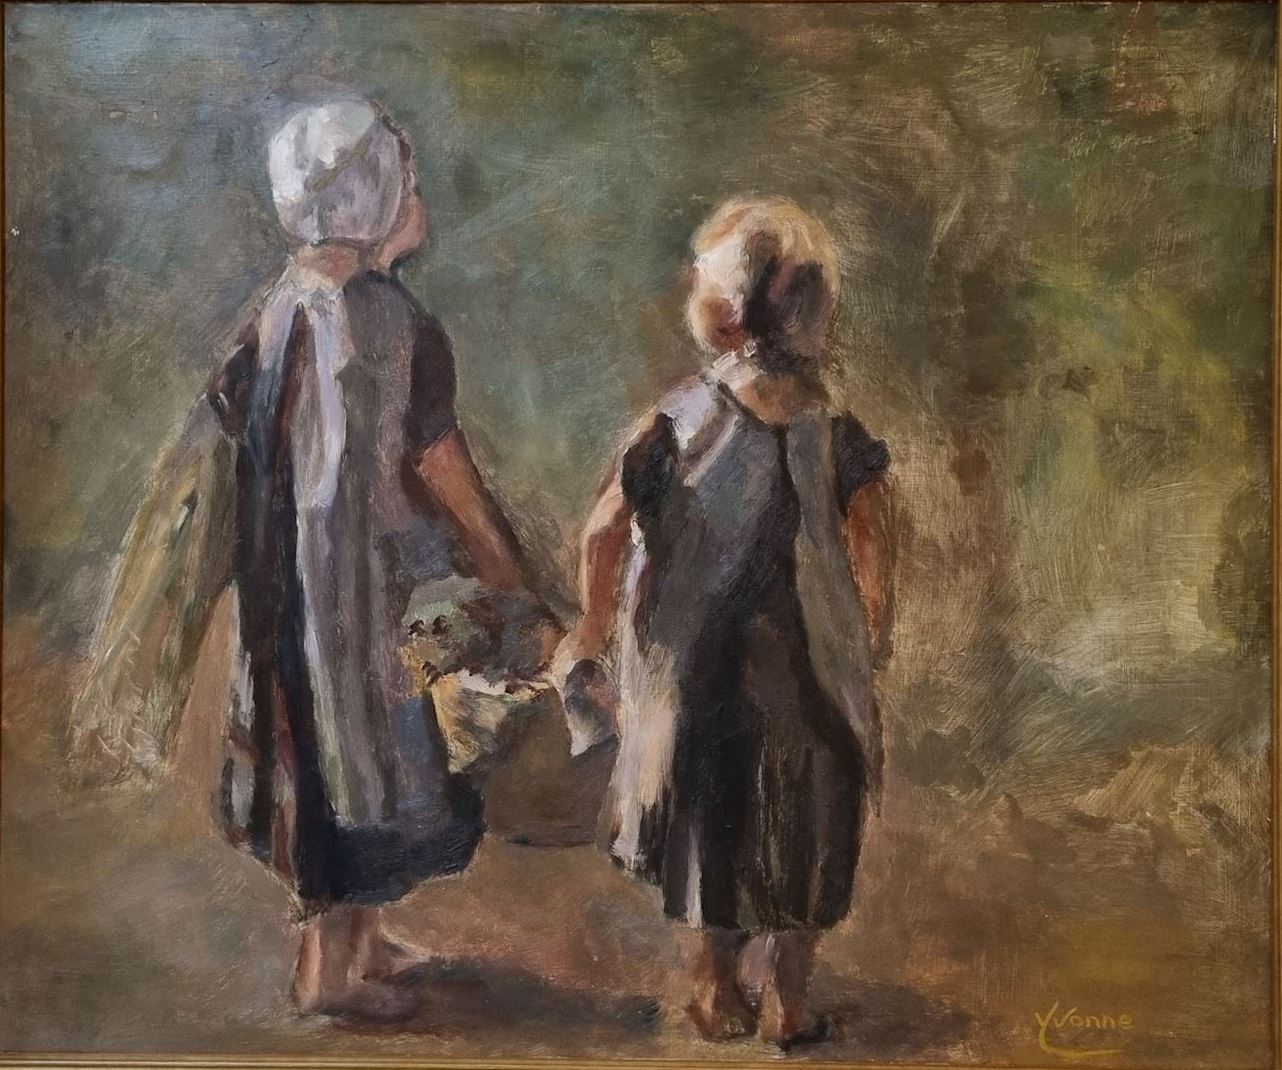 Meisjes met mand yvonne dobbe jozef israels kunst uit de kast noordwijk bollenstreek schilderij